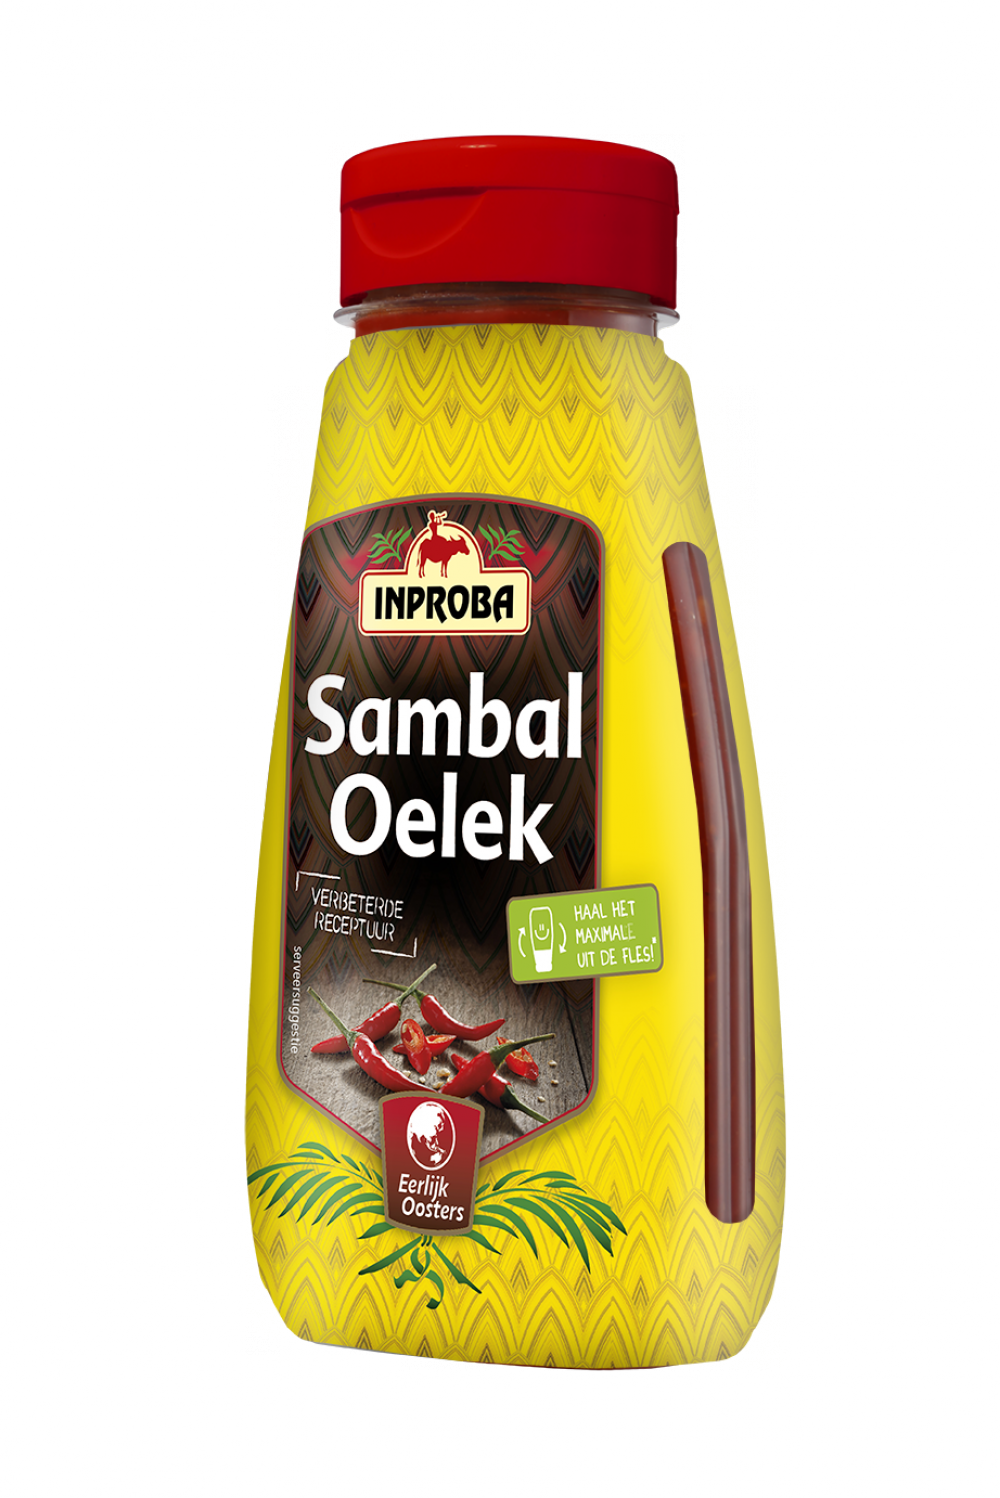 Sambal Oelek - Inproba - Oriental Foods